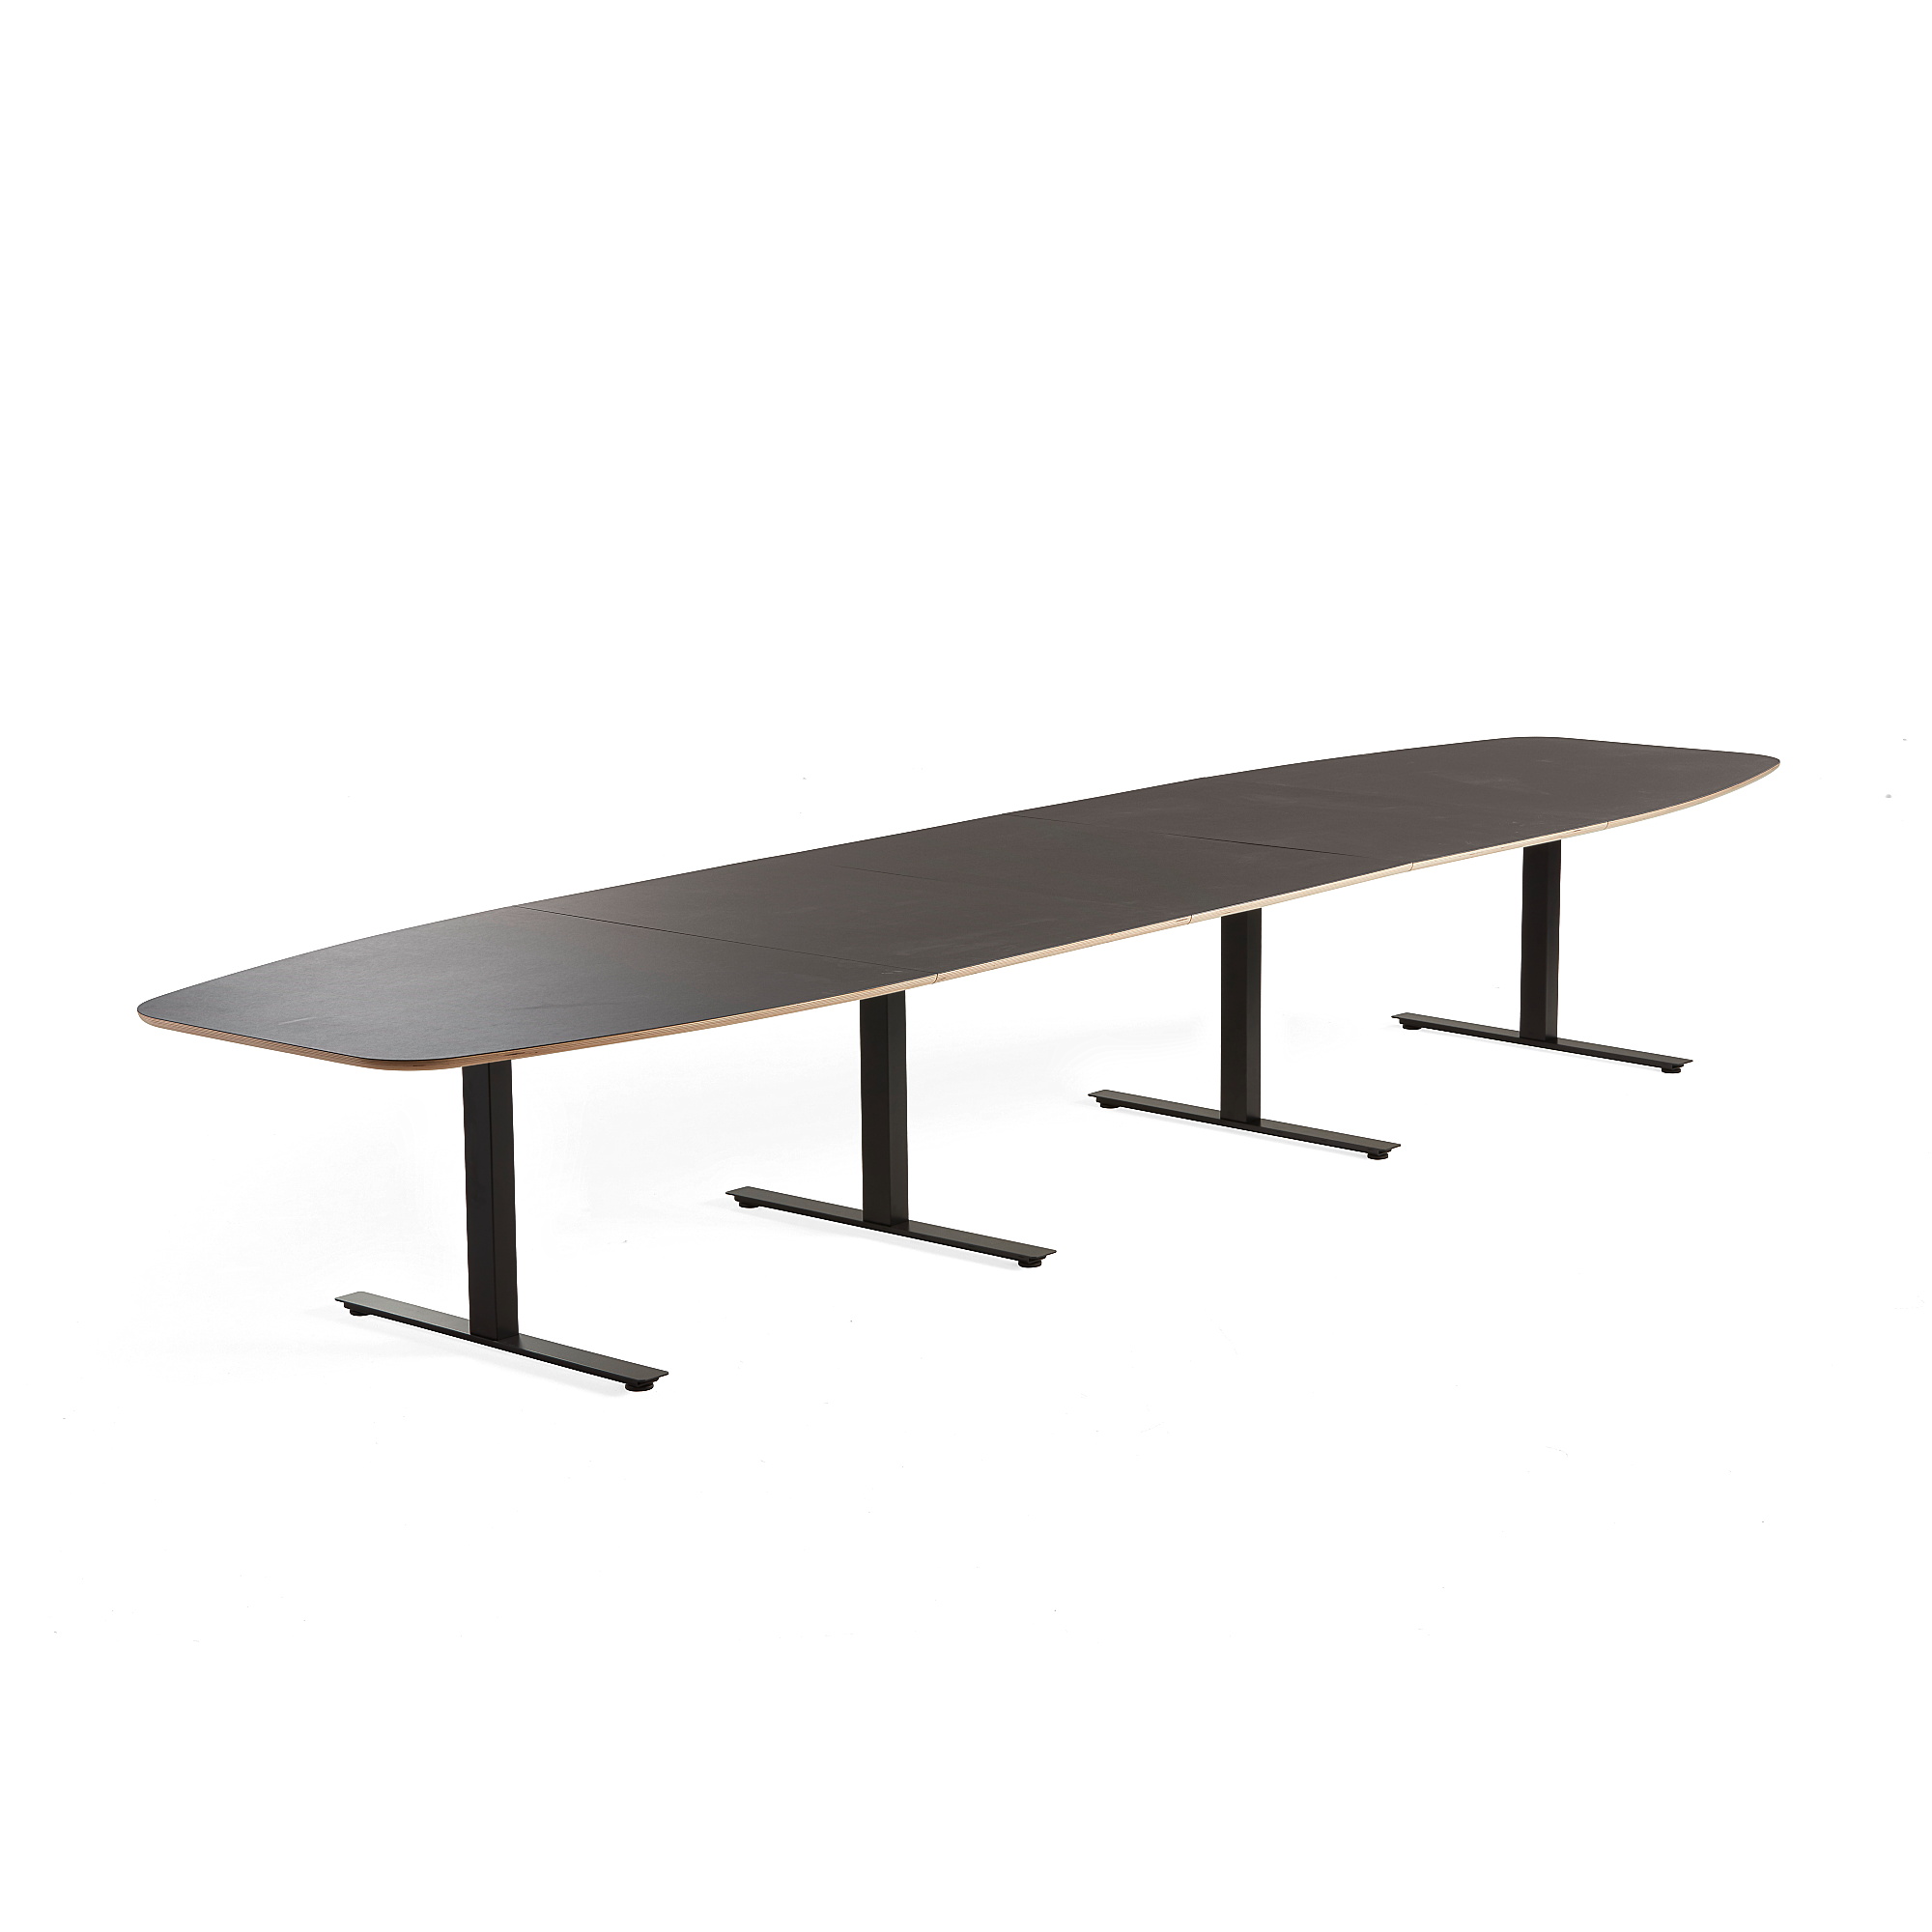 Rokovací stôl AUDREY, 4800x1200 mm, čierny rám, šedohnedá doska